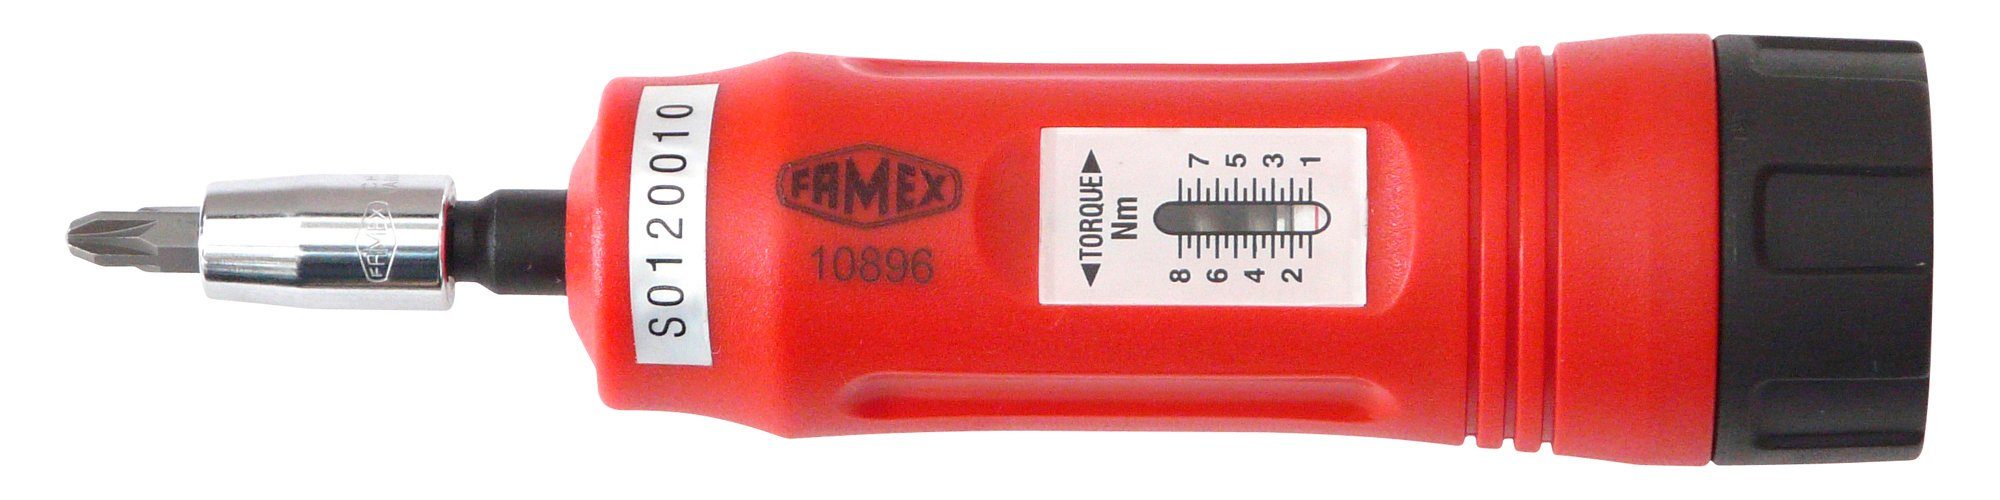 Nm 10896, FAMEX 1-8 Drehmomentschlüssel